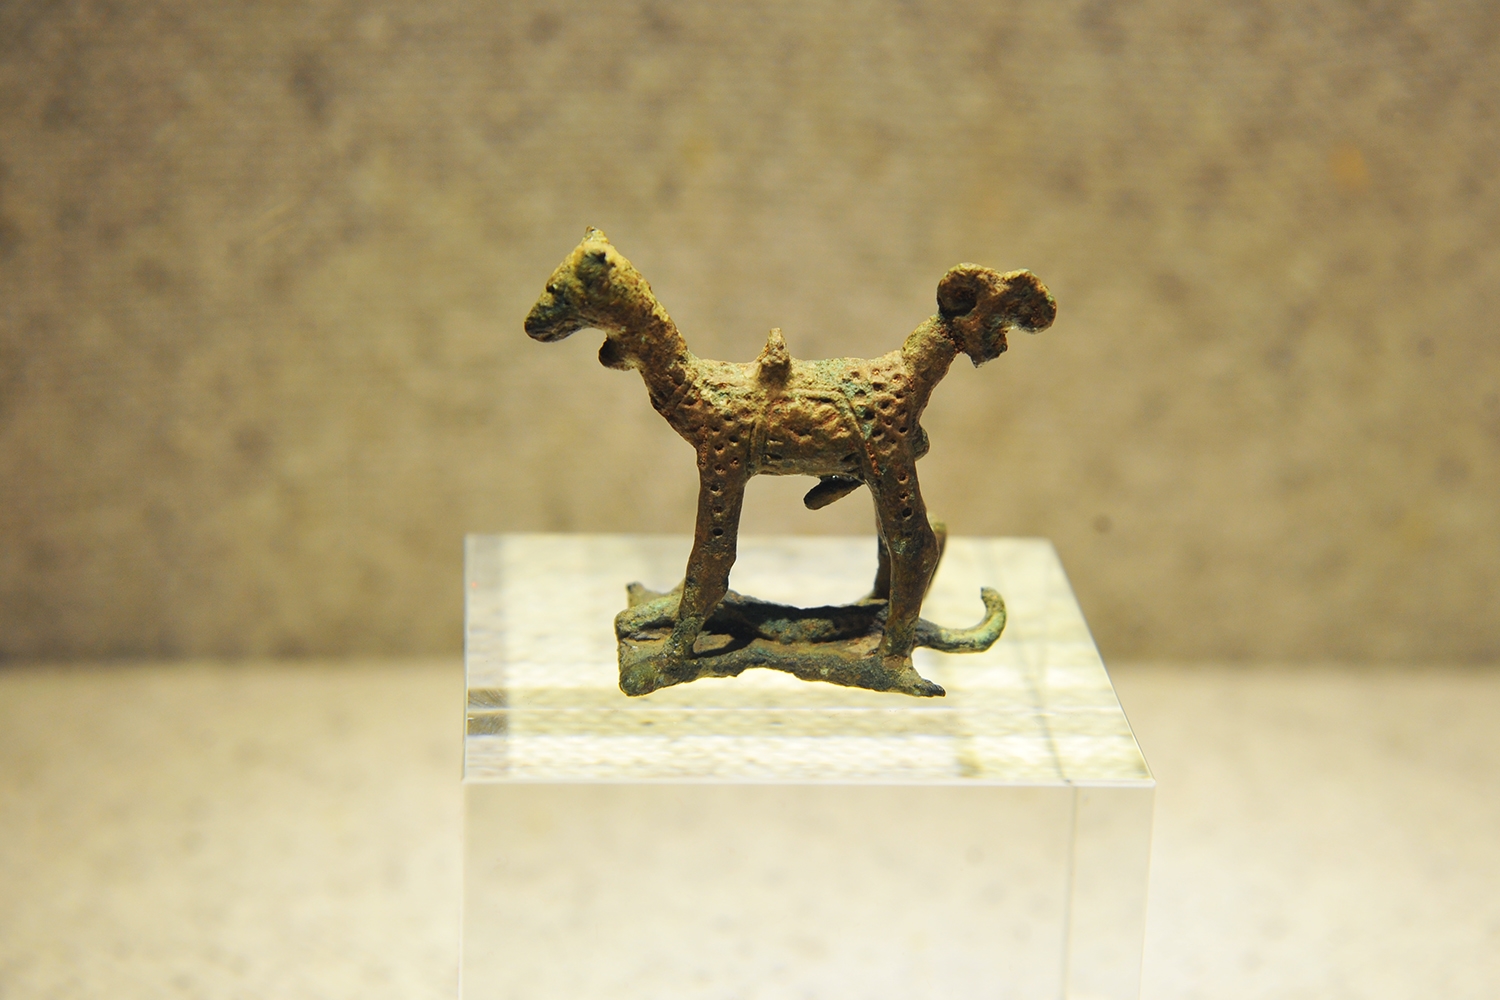 Tượng động vật bằng đồng thuộc văn hóa Đồng Nai, cách ngày nay khoảng 2.500 năm, khai quật tại Dốc Chùa, Tân Uyên, Bình Dương năm 1977.